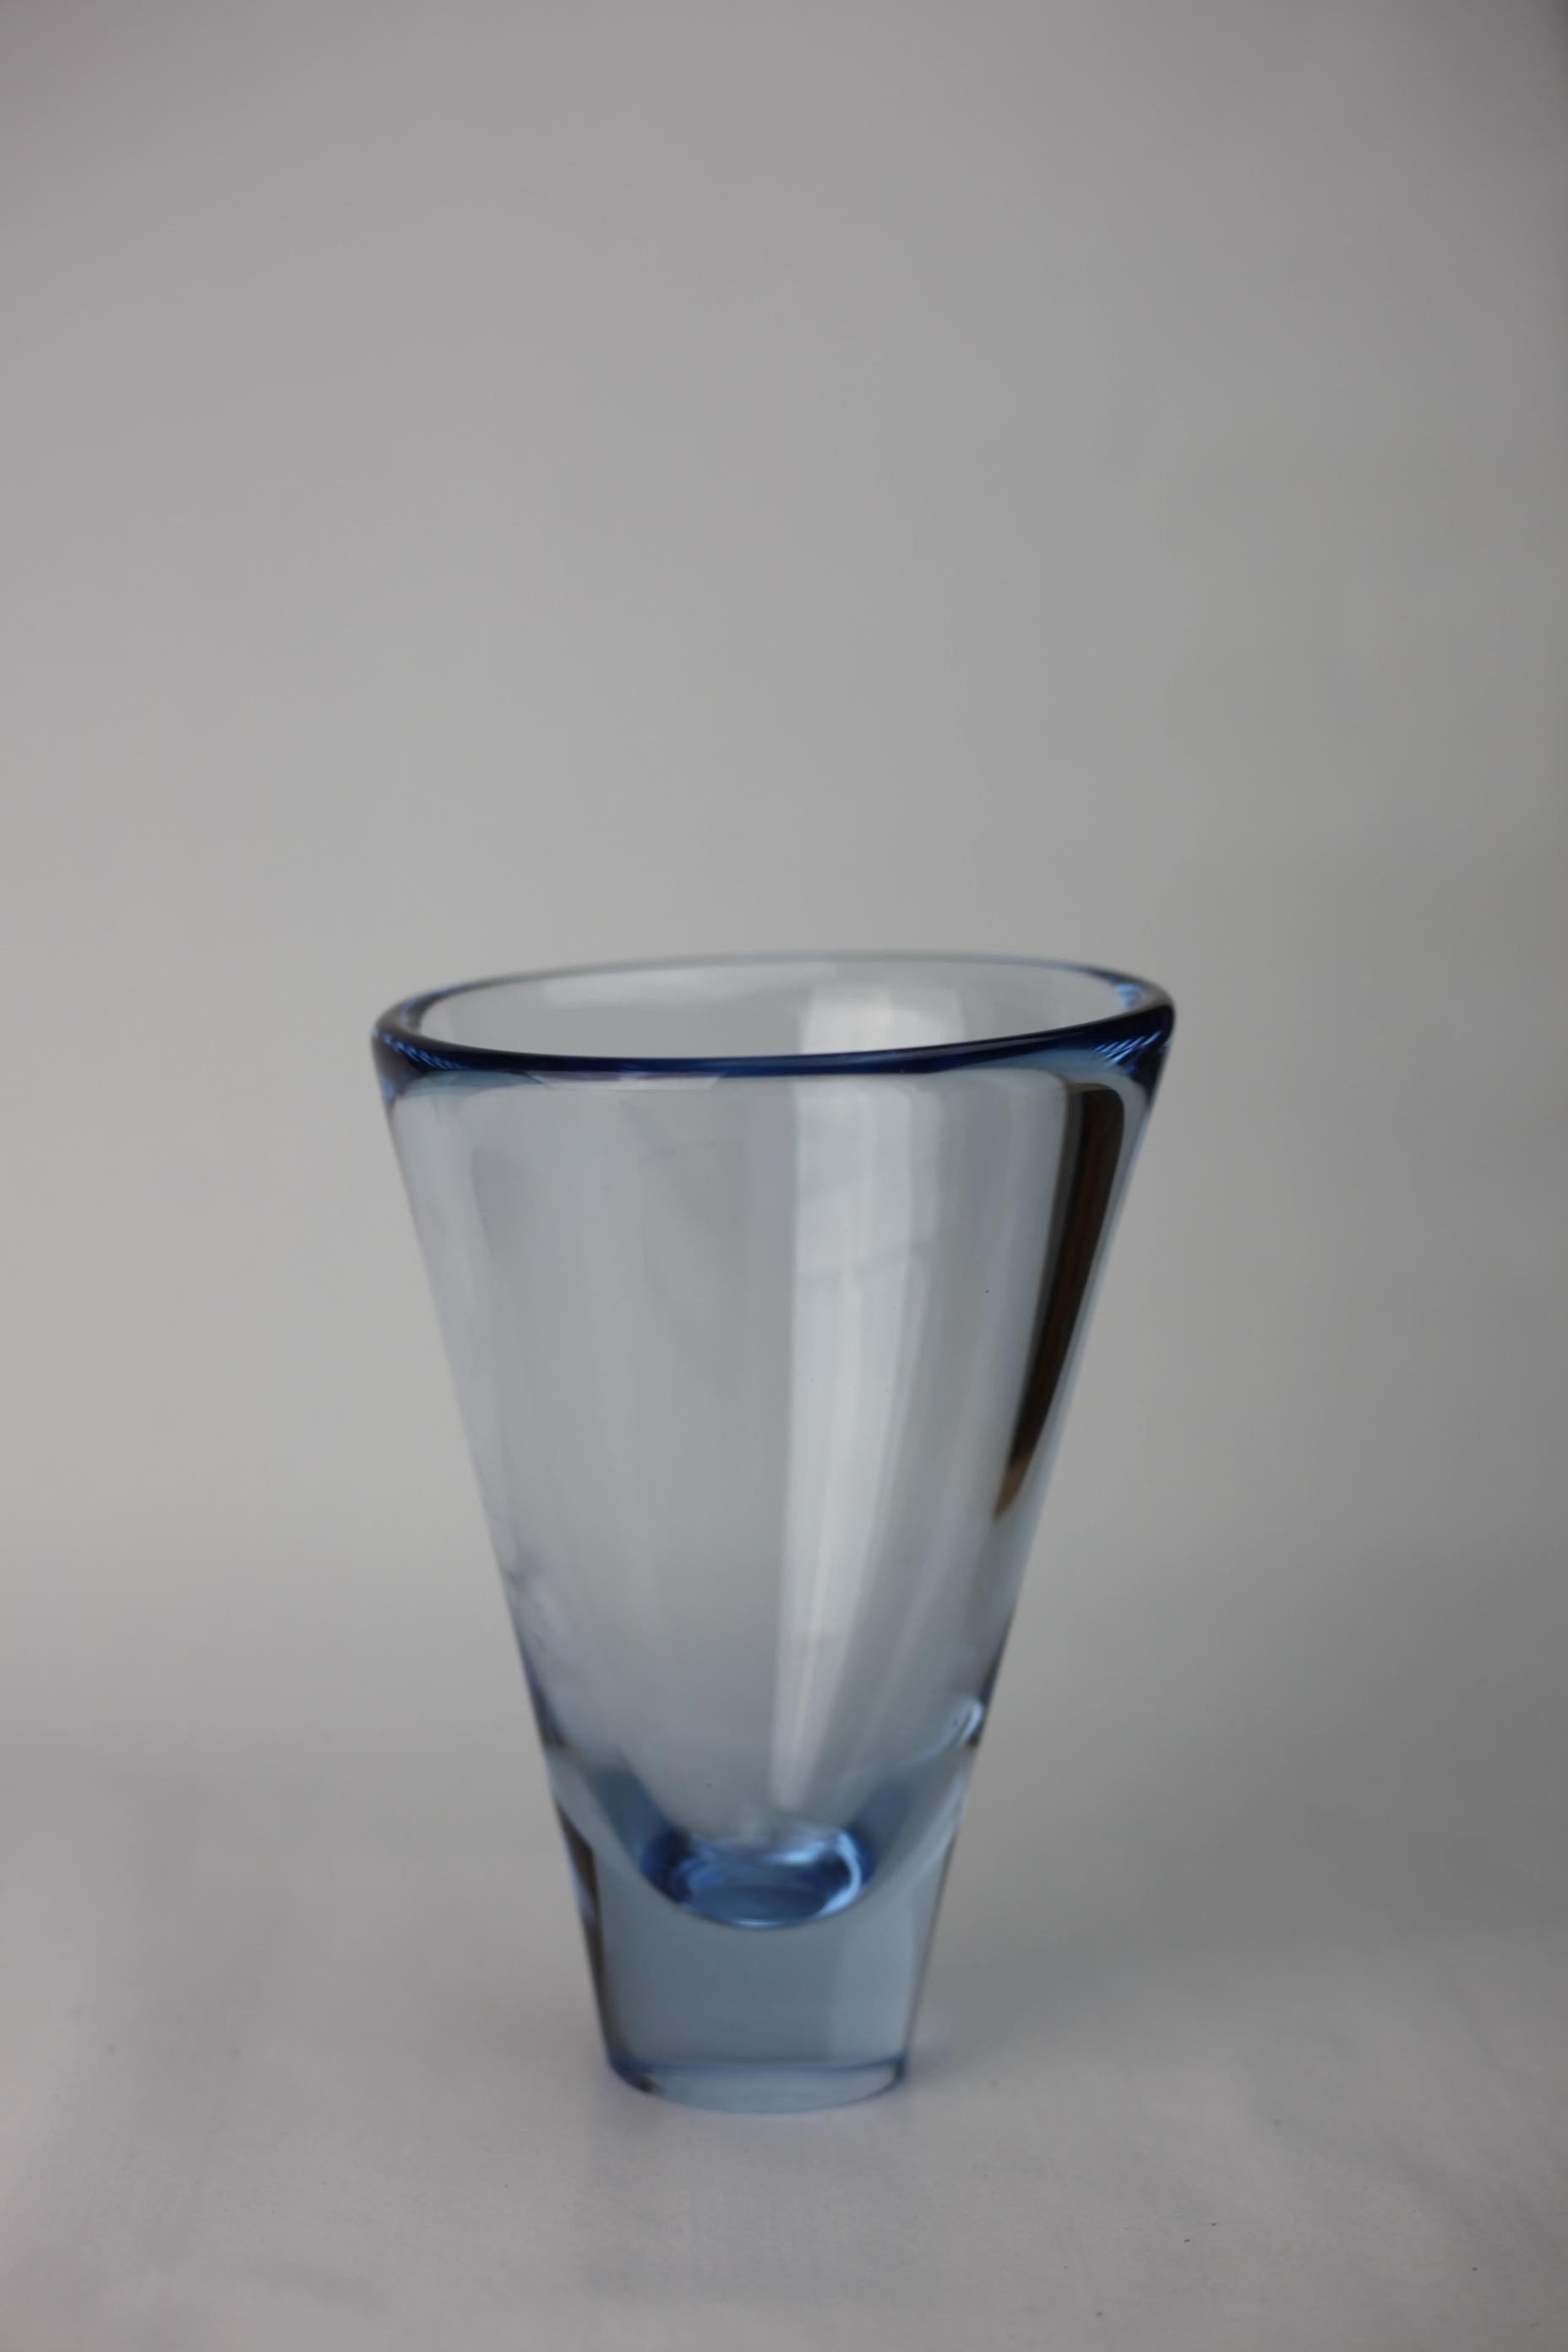 Le vase Aqua blue ''Thule'' a été réalisé par Per Lütken pour Holmegaard Glass dans les années 1950. 

Pas d'ébréchures ni de défauts.